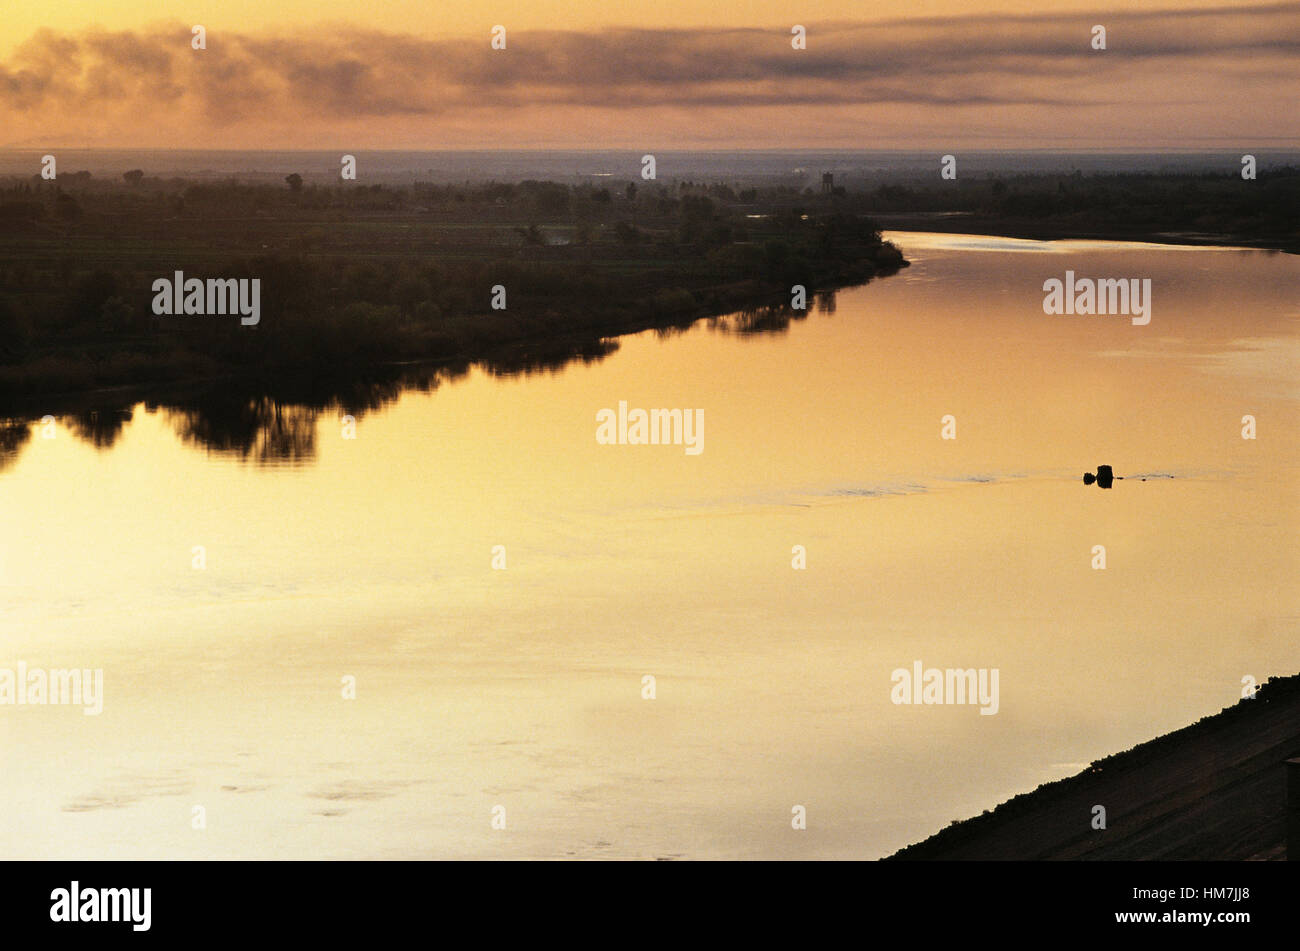 The Euphrates river at sunset near Deir ez-Zor, Syria. Stock Photo